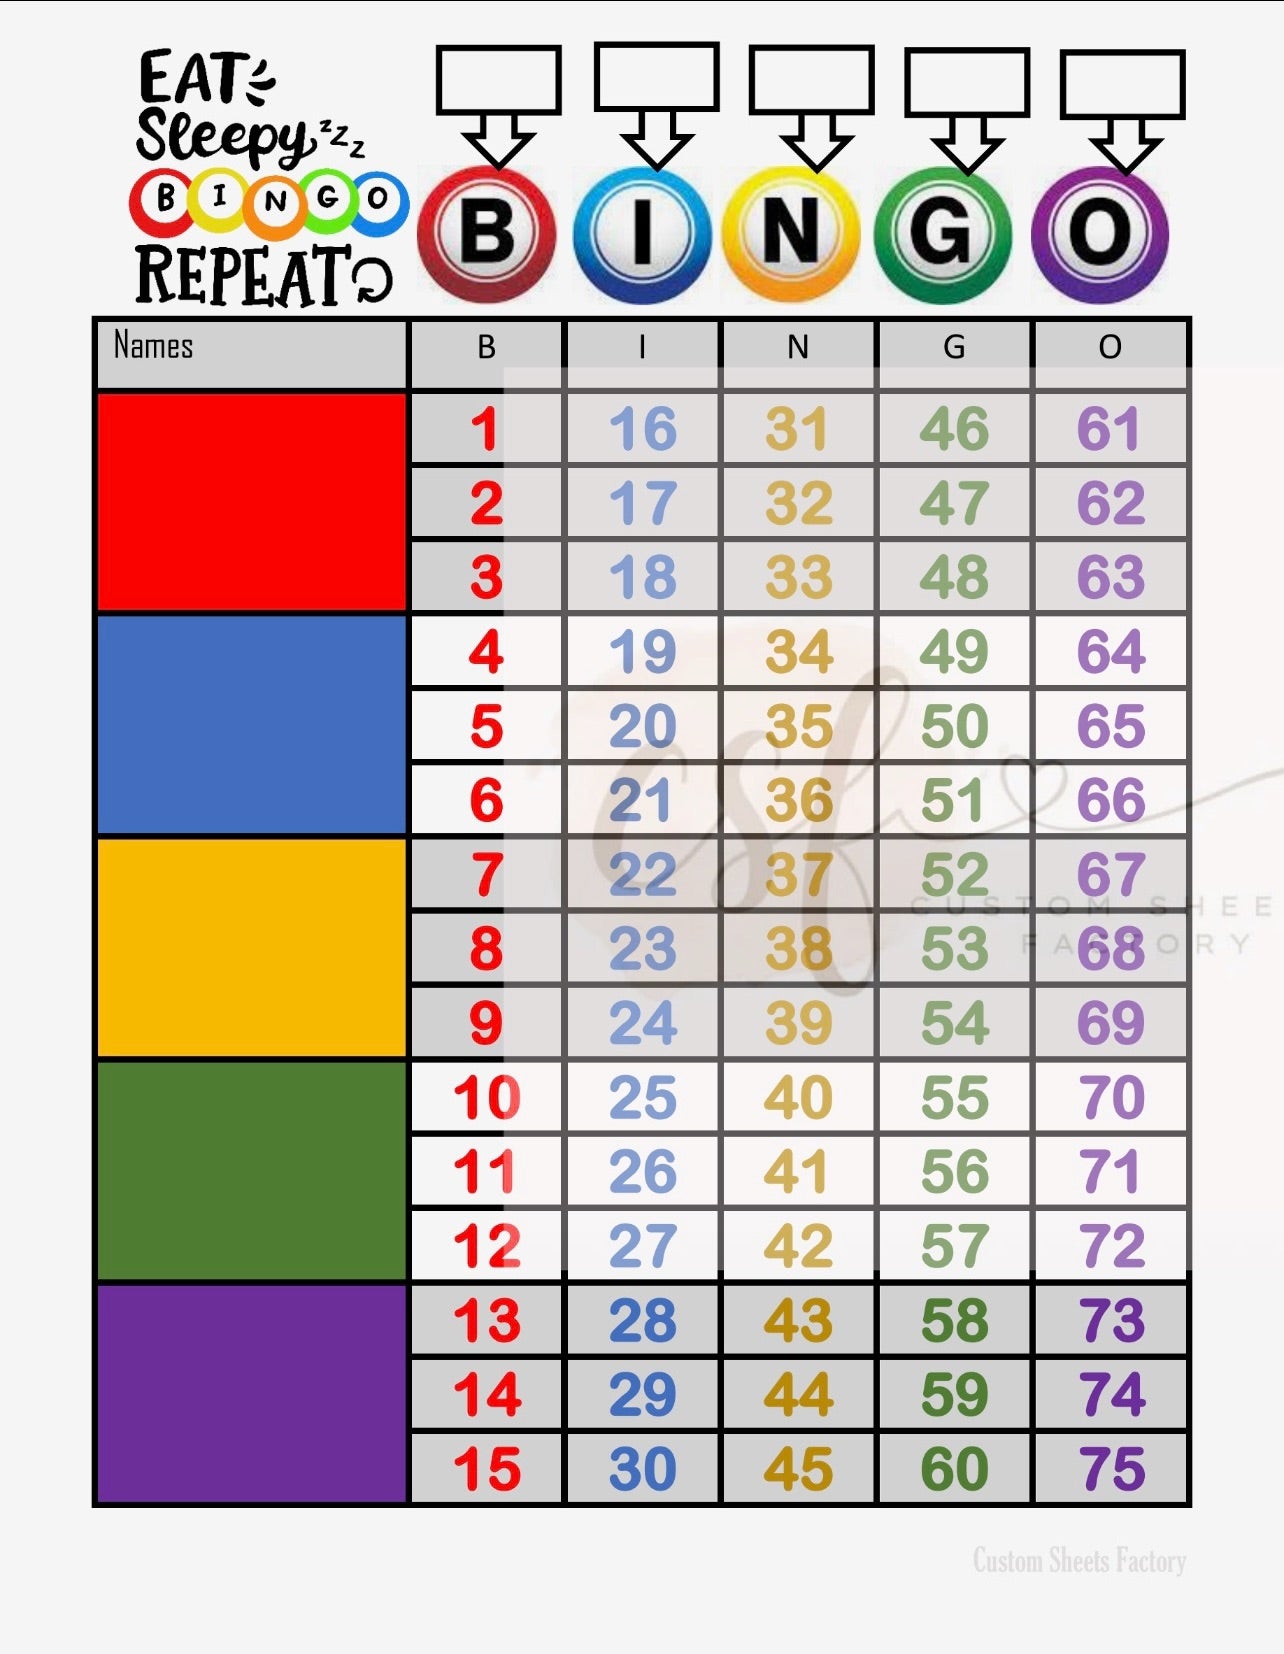 Eat Sleep Bingo - 5 Block - 75 Ball